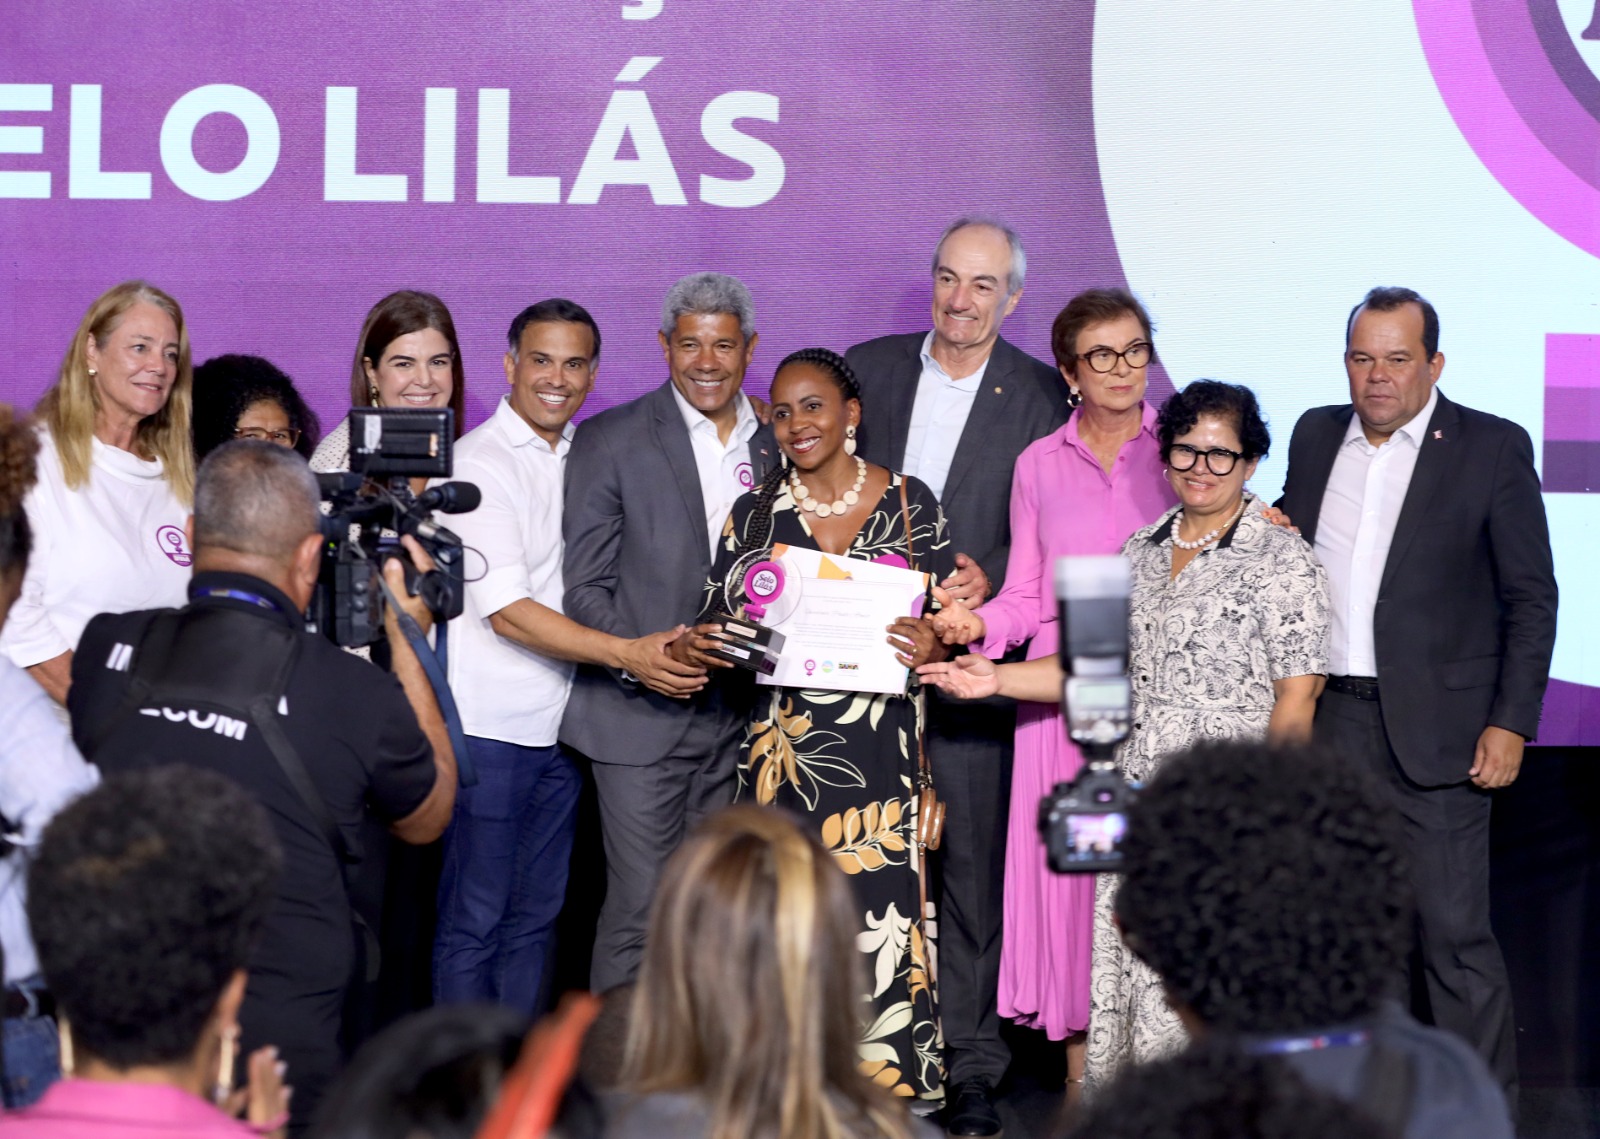 Empresas baianas recebem o Selo Lilás por promover igualdade de gênero no ambiente de trabalho